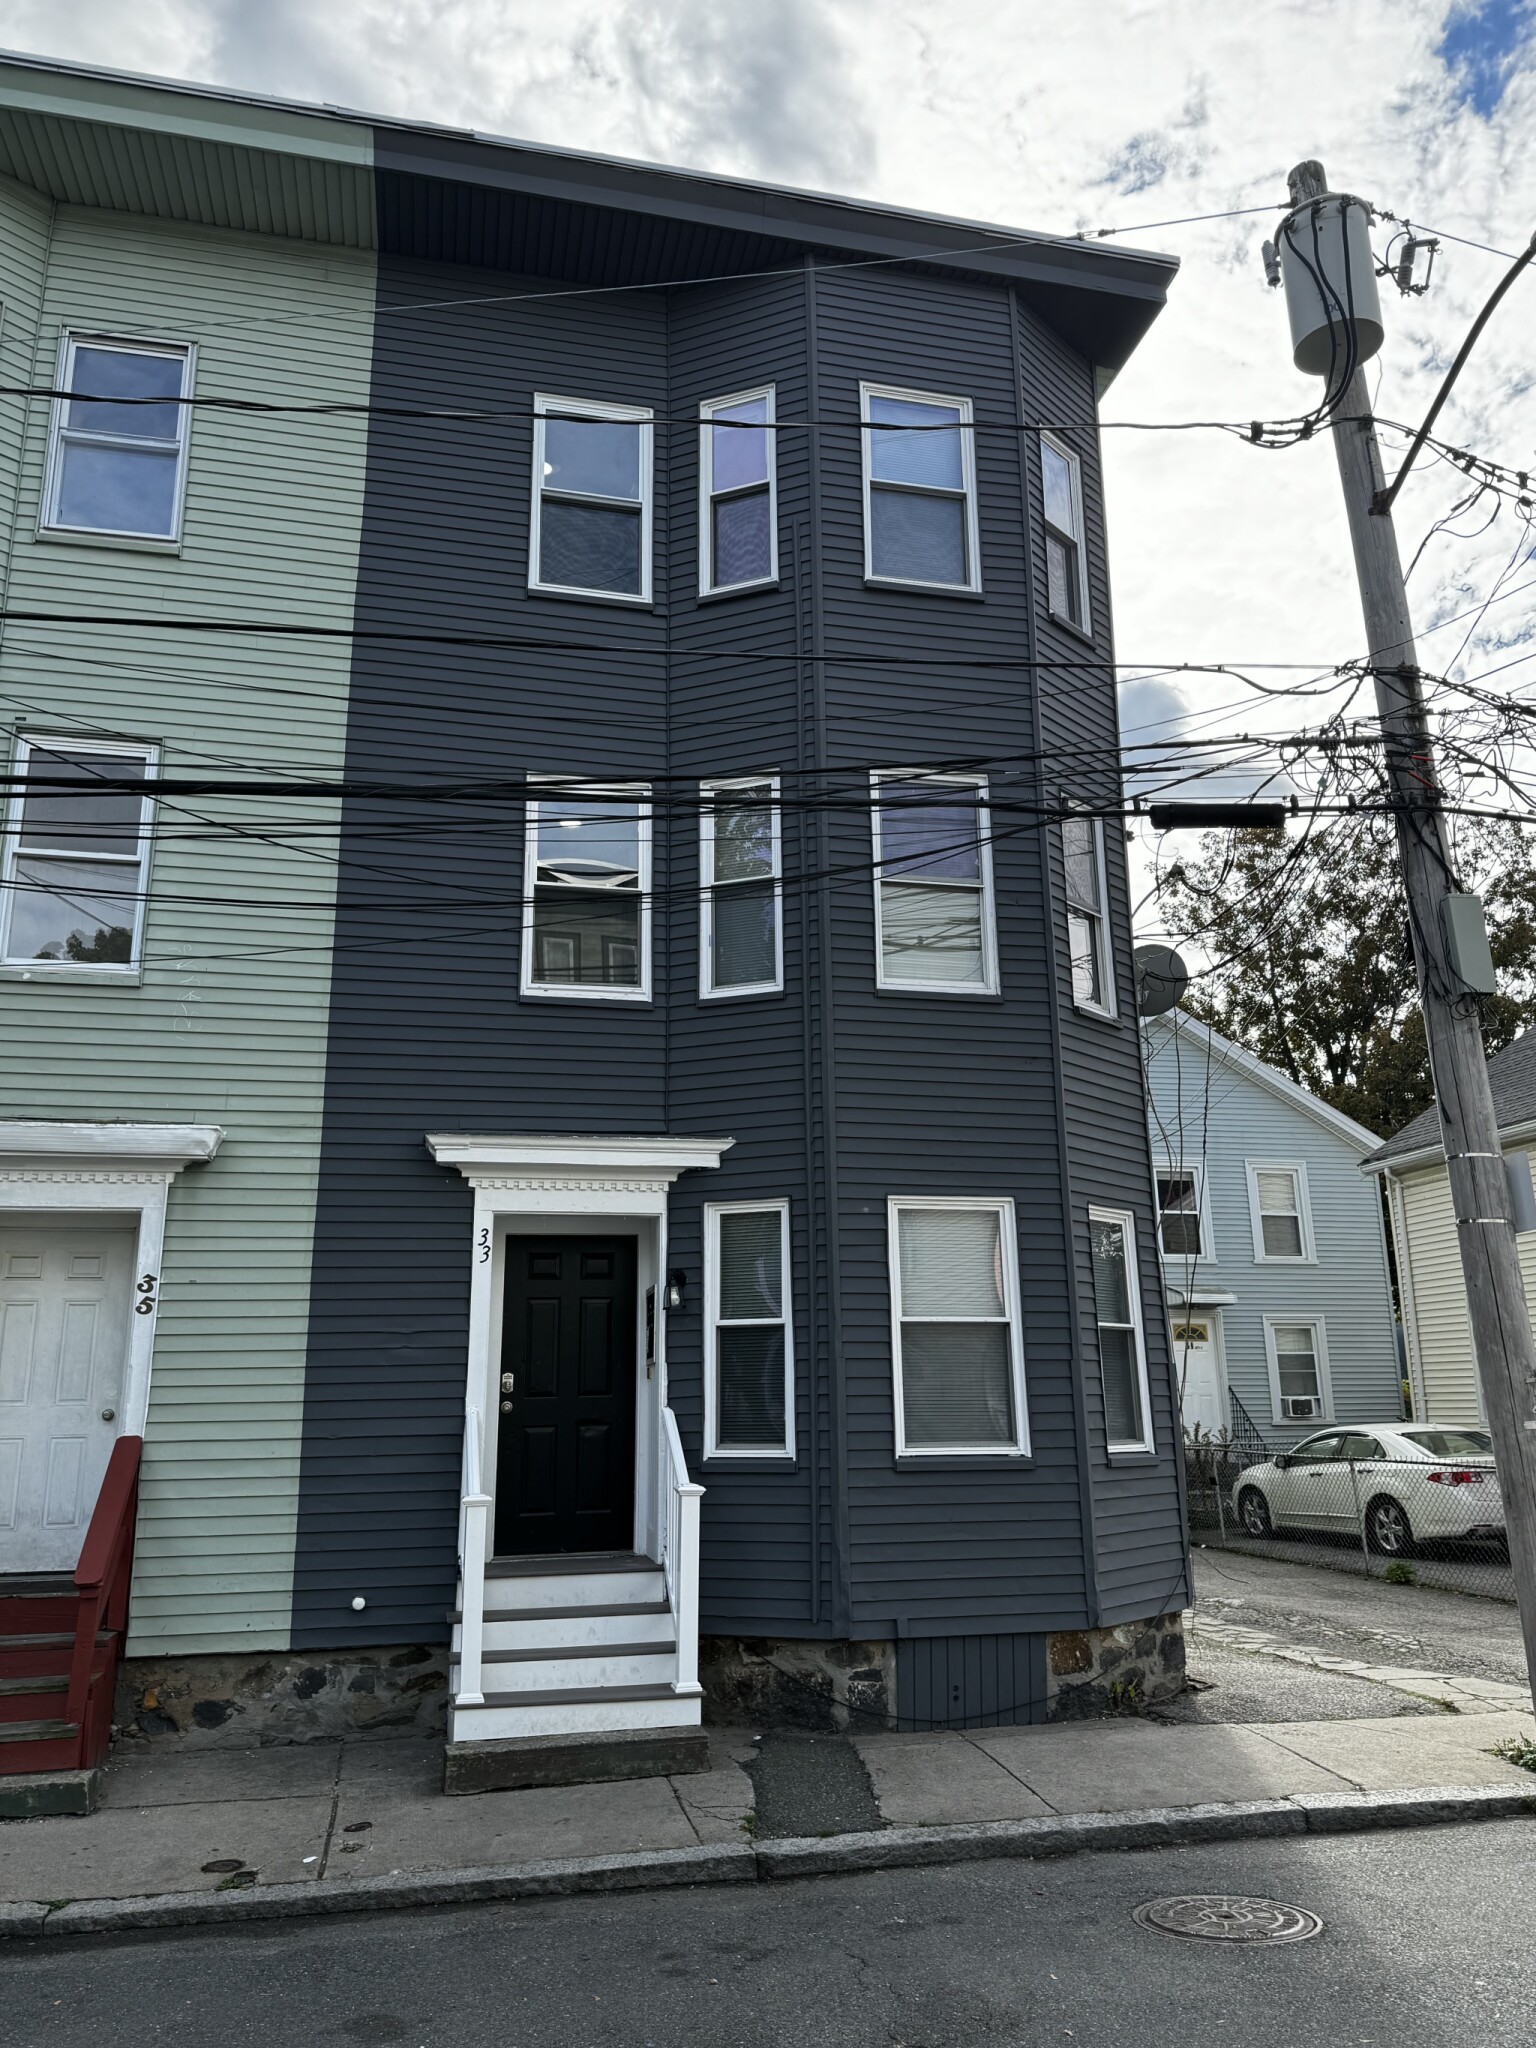 Photos of apartment on Bradbury St.,Boston MA 02134